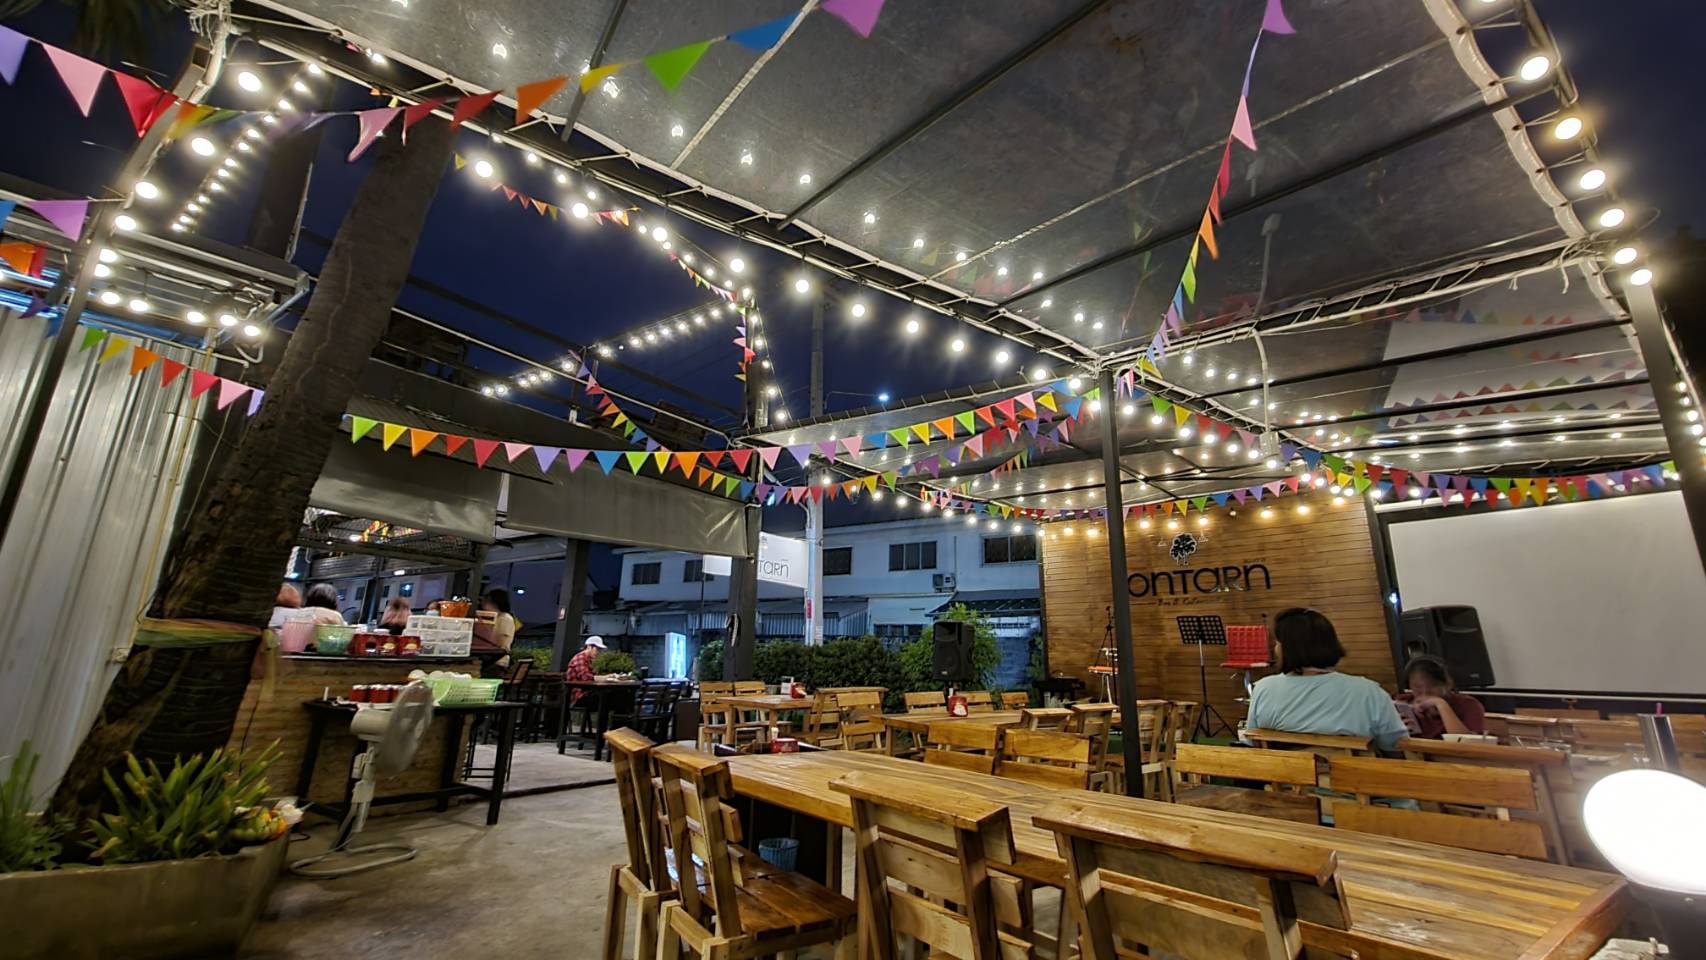 Lontarn Bar & Restaurant (Lontarn Bar & Restaurant) : Pathum Thani (ปทุมธานี)